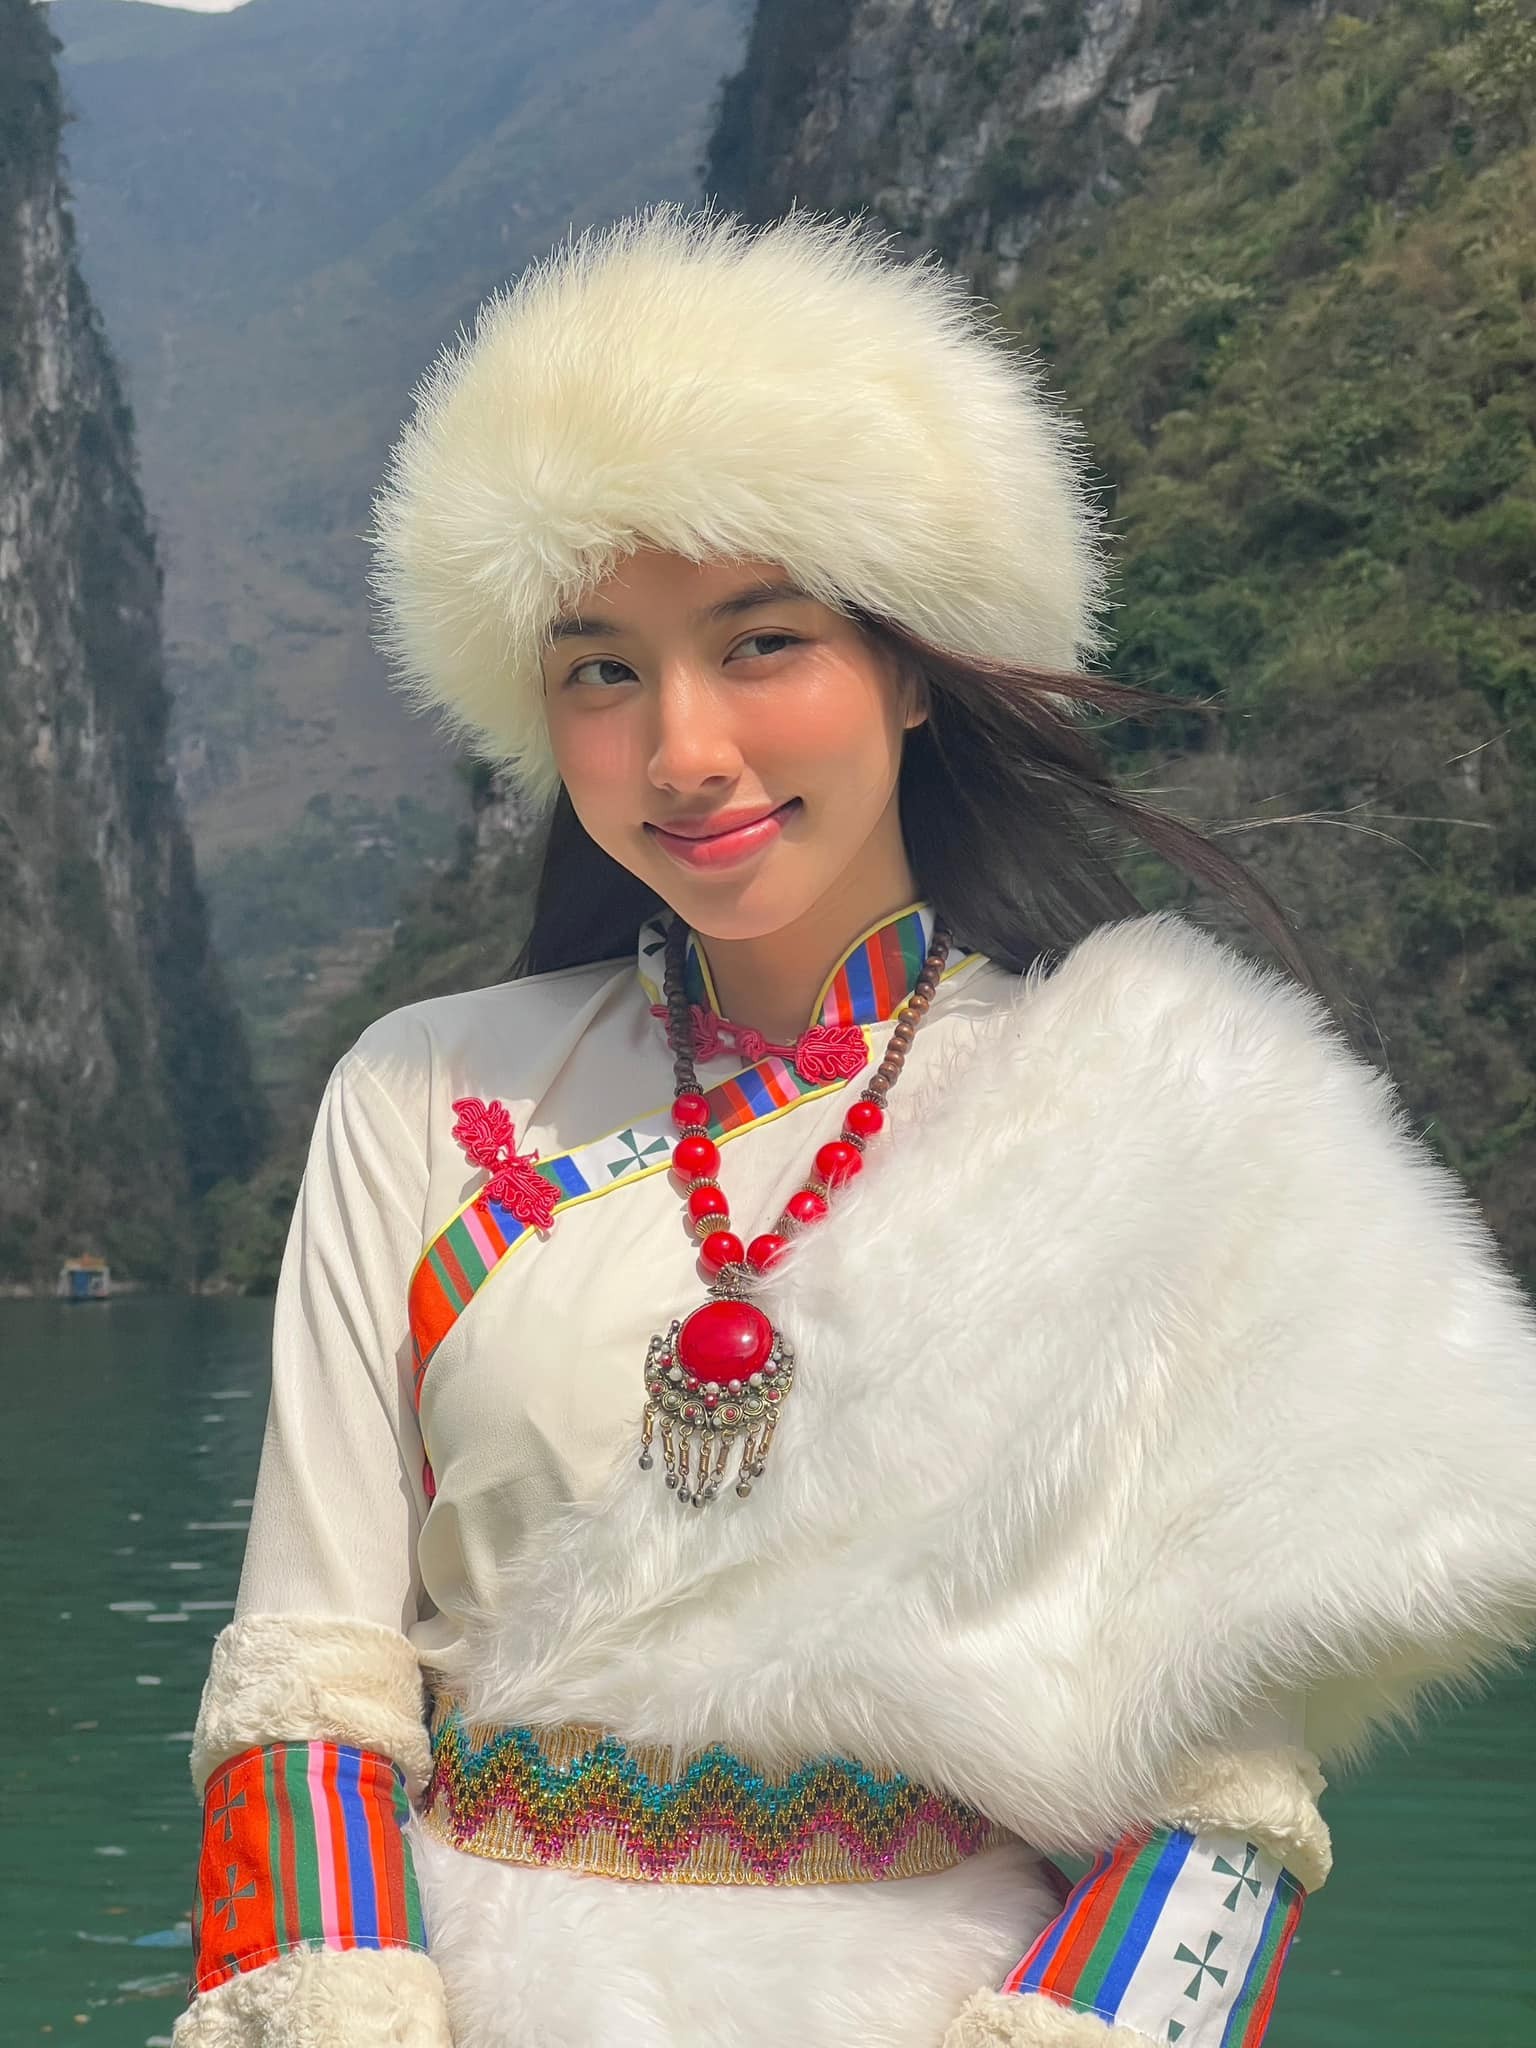 Thùy Tiên: Instagram đạt 2 triệu follower, là Miss Grand được quan tâm nhất